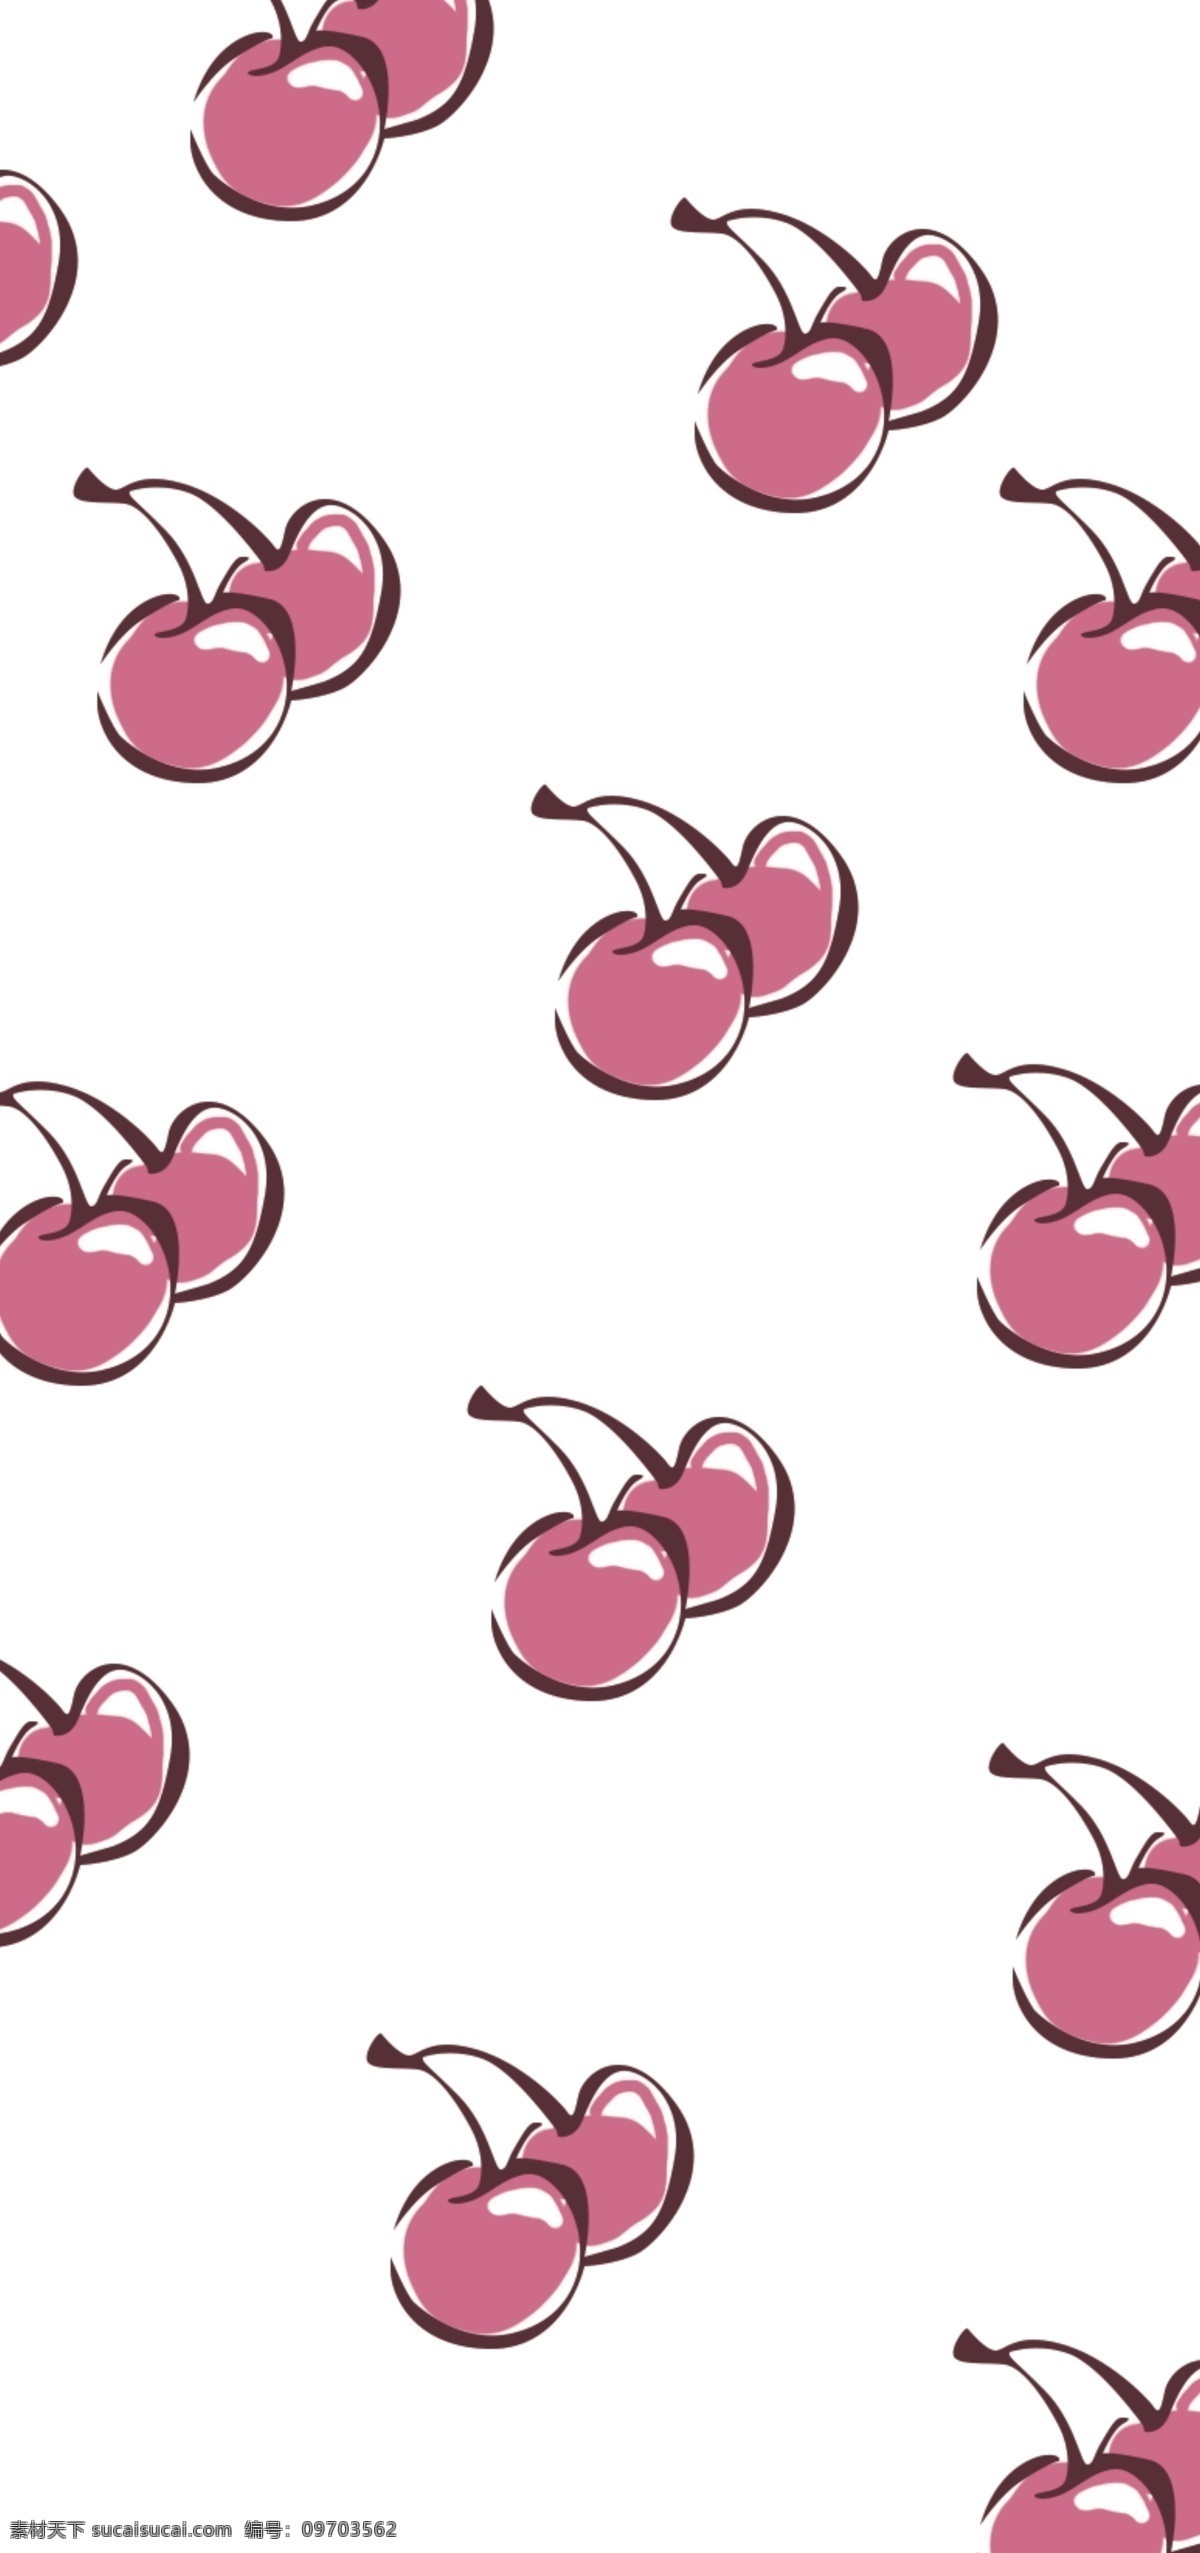 手机壳图案 樱桃 卡通樱桃 粉色背景 樱桃海报 绿叶 卡片海报 手绘 水彩